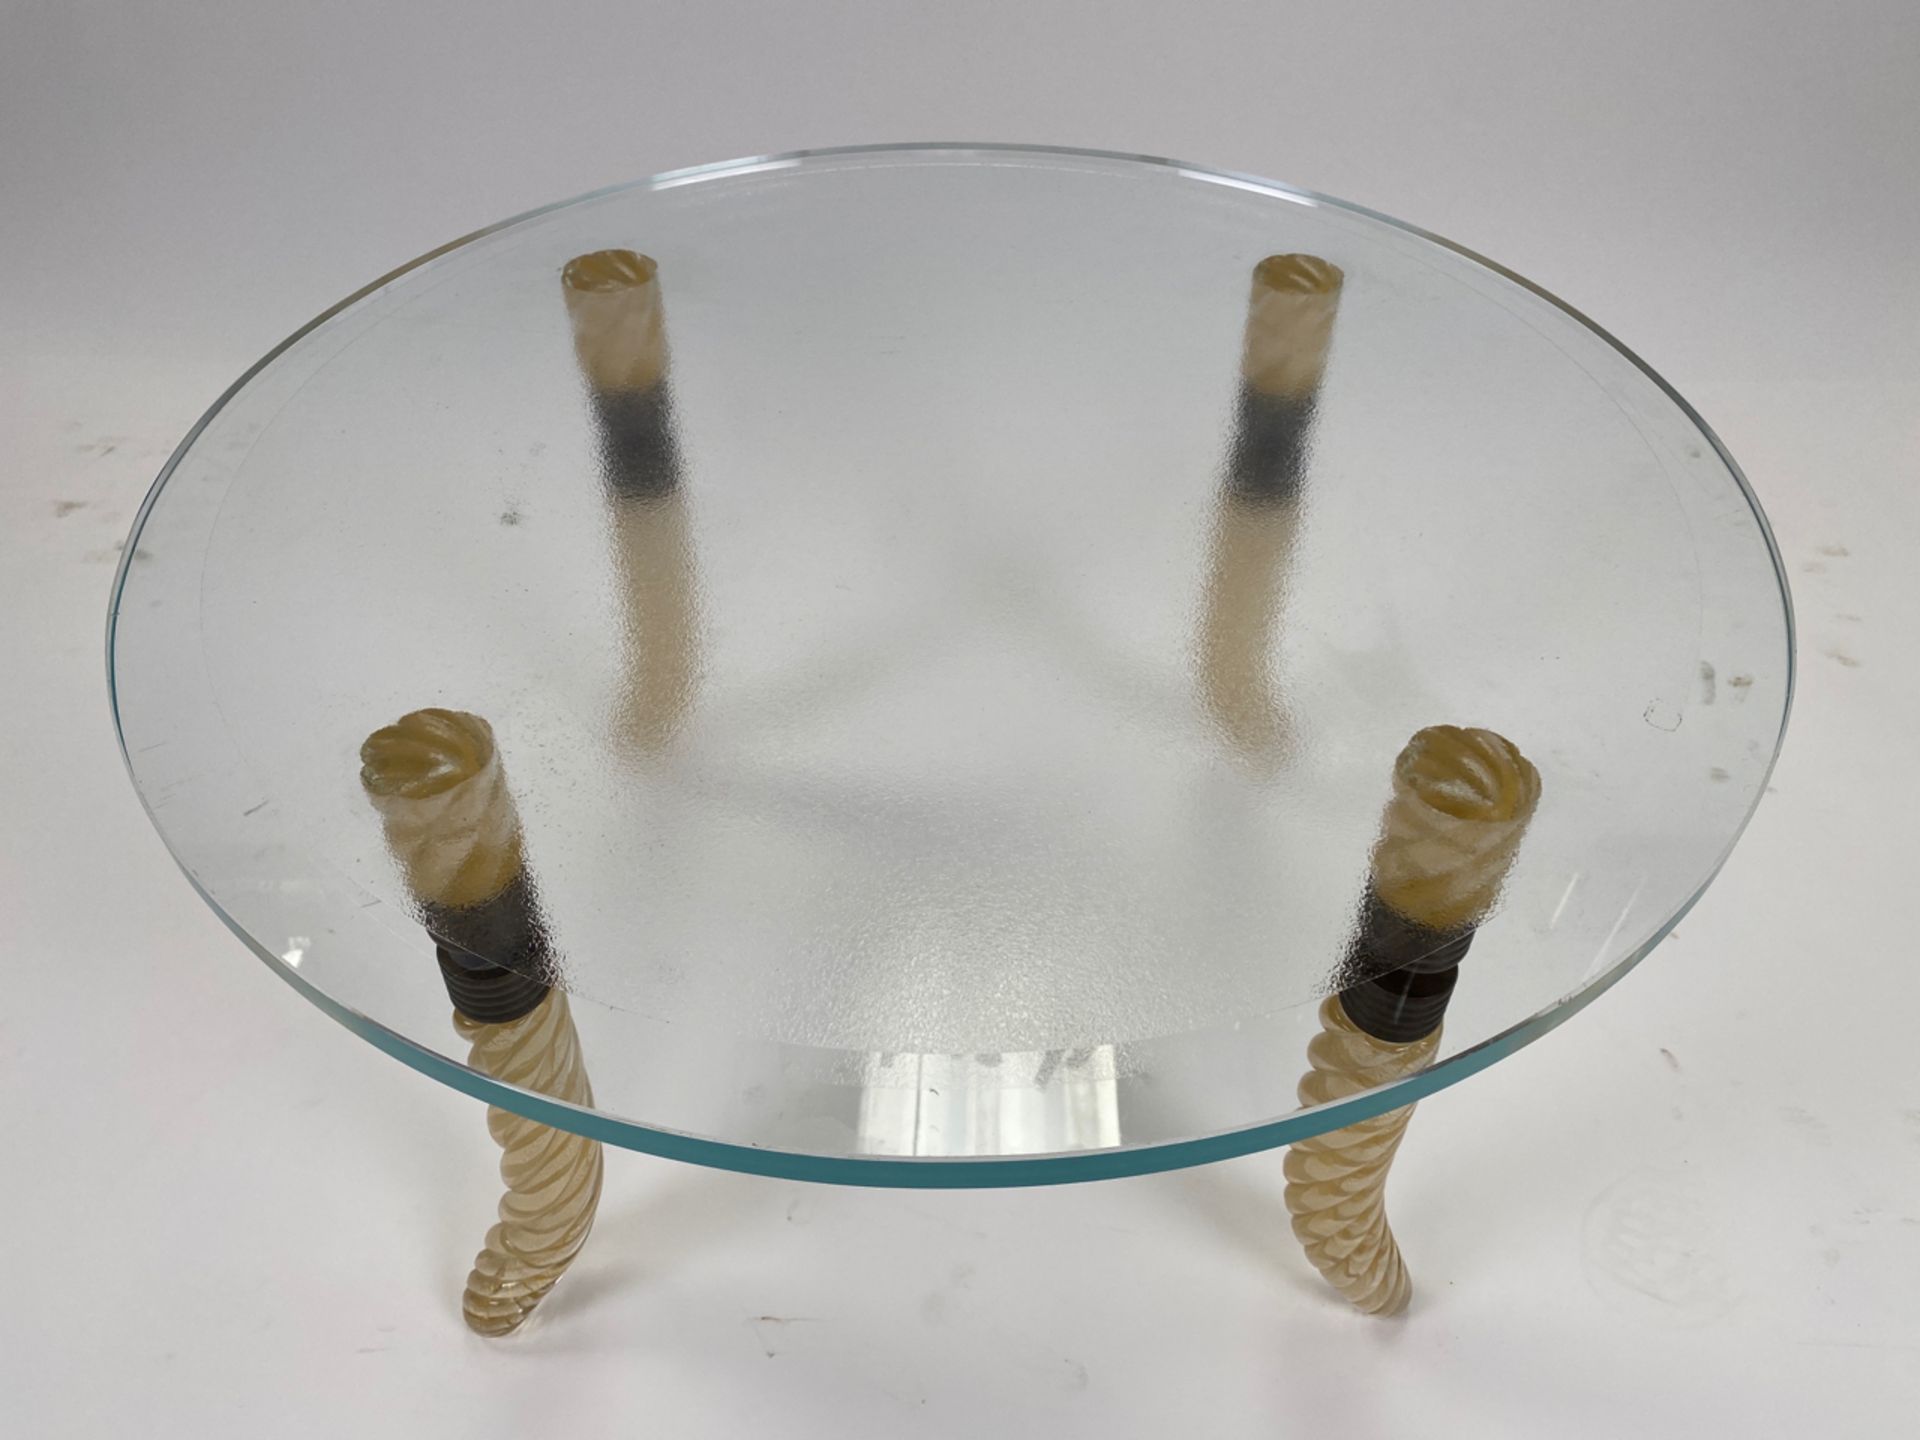 Diane Von Furstenburg Suite Prototype Glass Table - Image 4 of 6